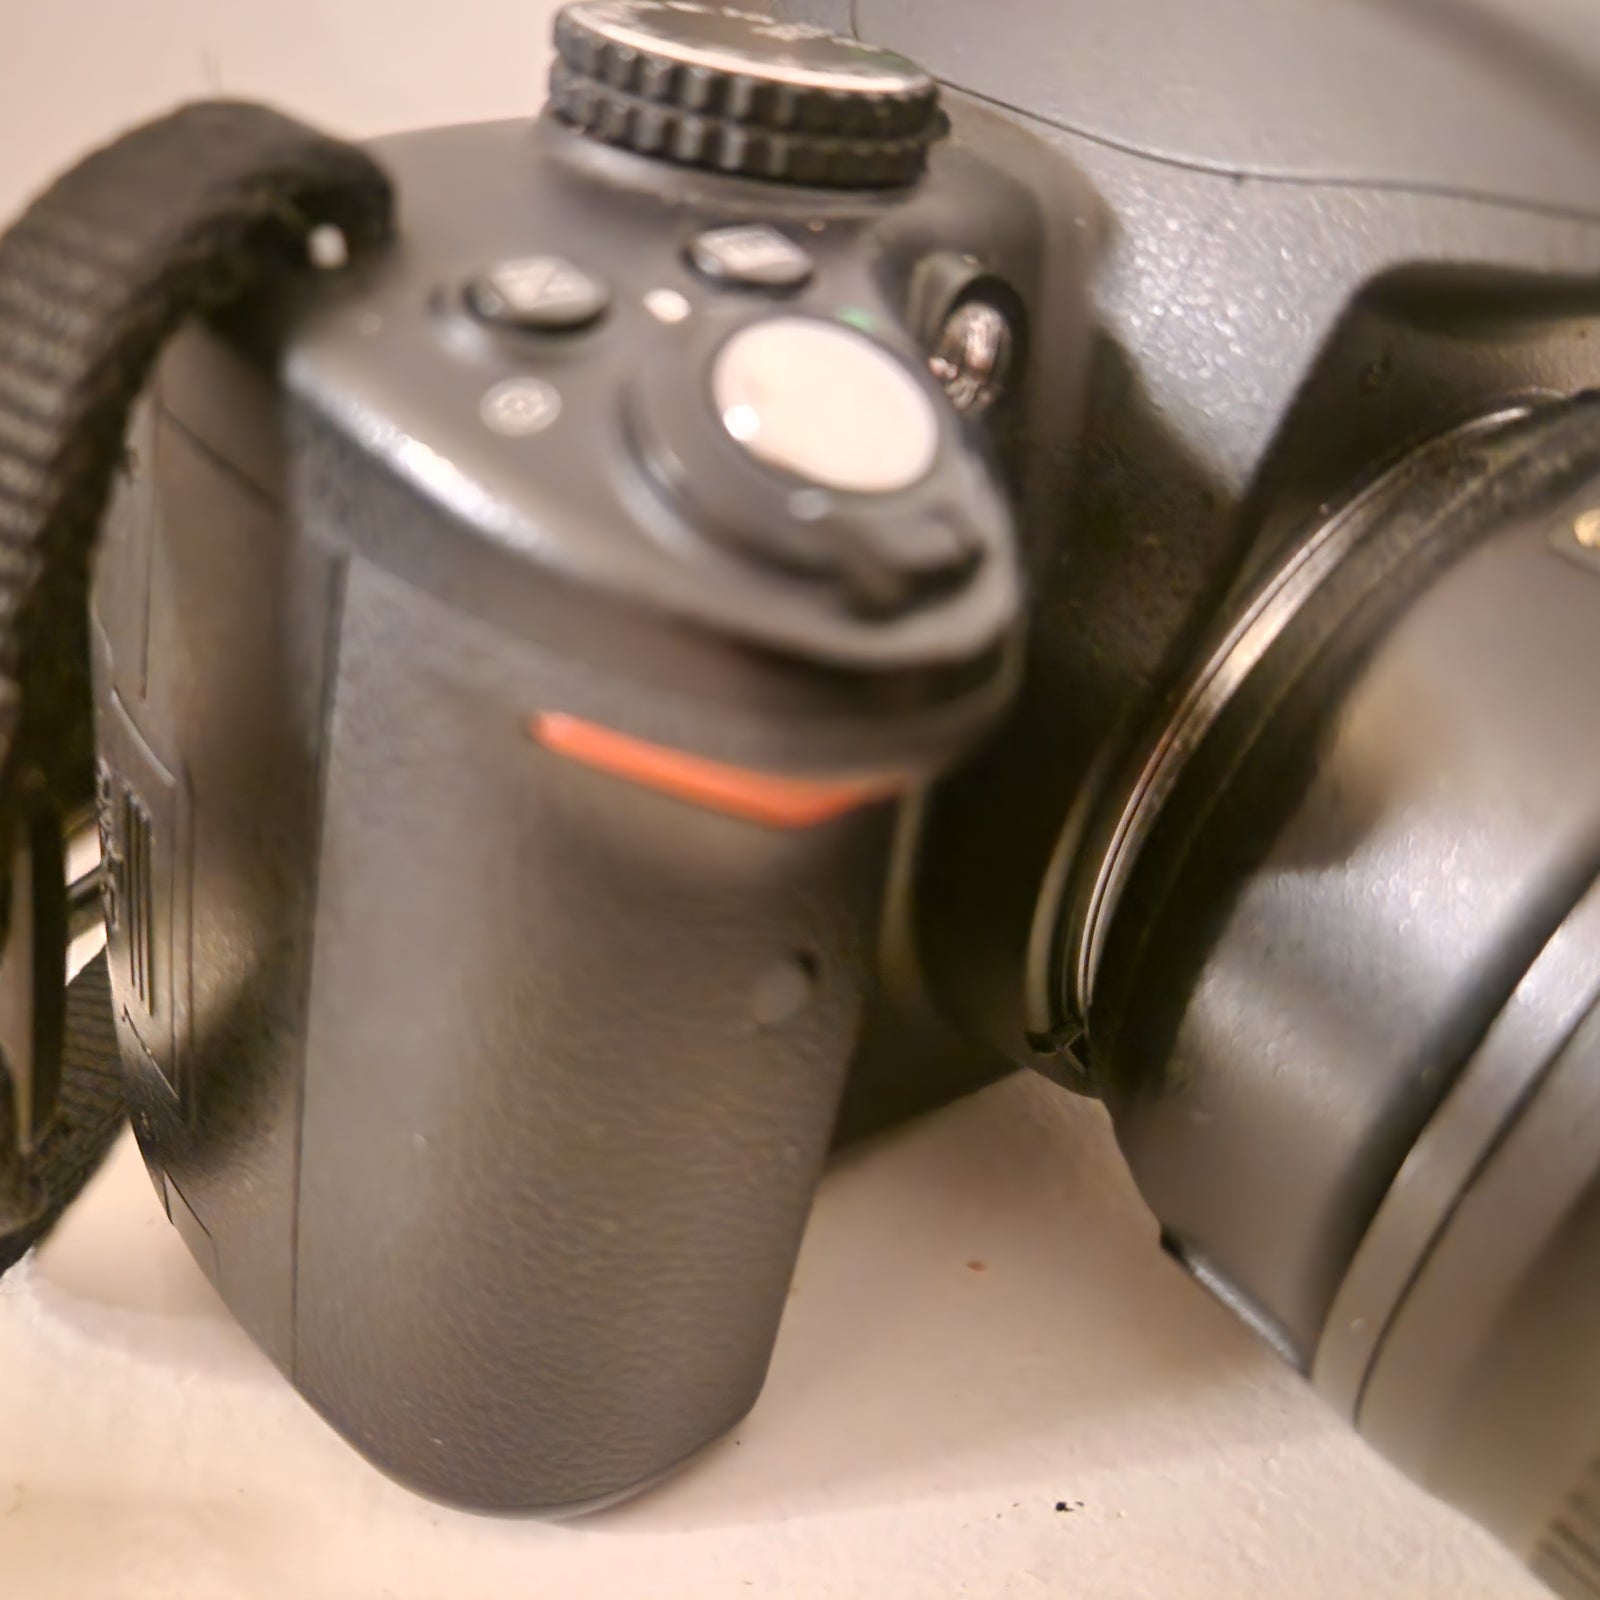 Nikon D5000, spejlrefleks, 12,4 megapixels